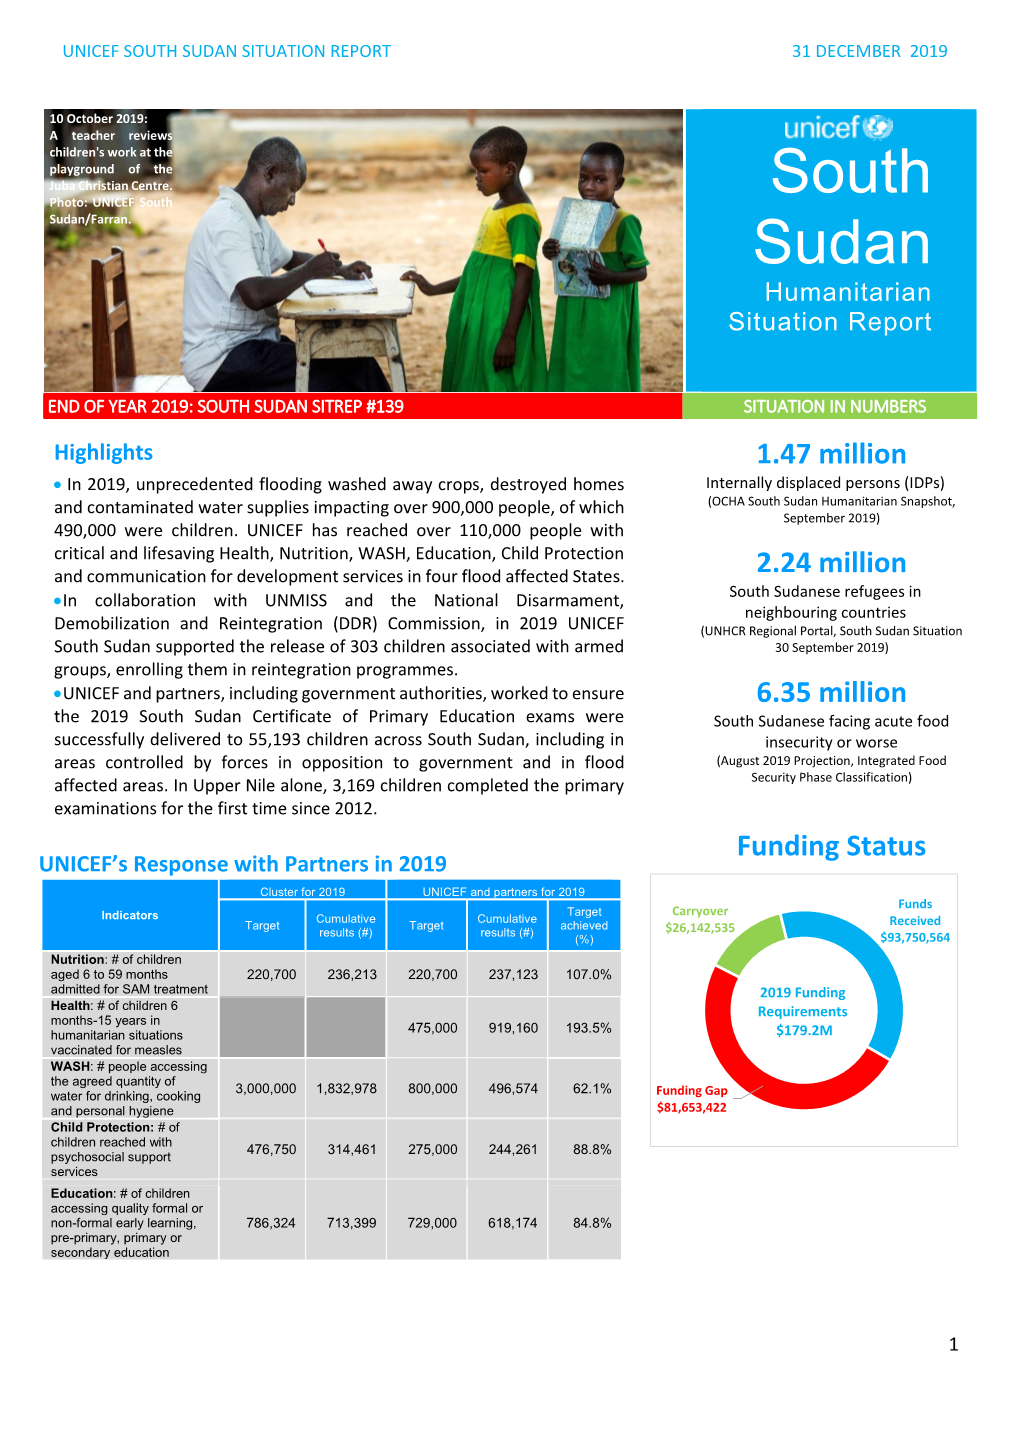 UNICEF South Sudan Humanitarian Situation (Jan-Dec 2019)